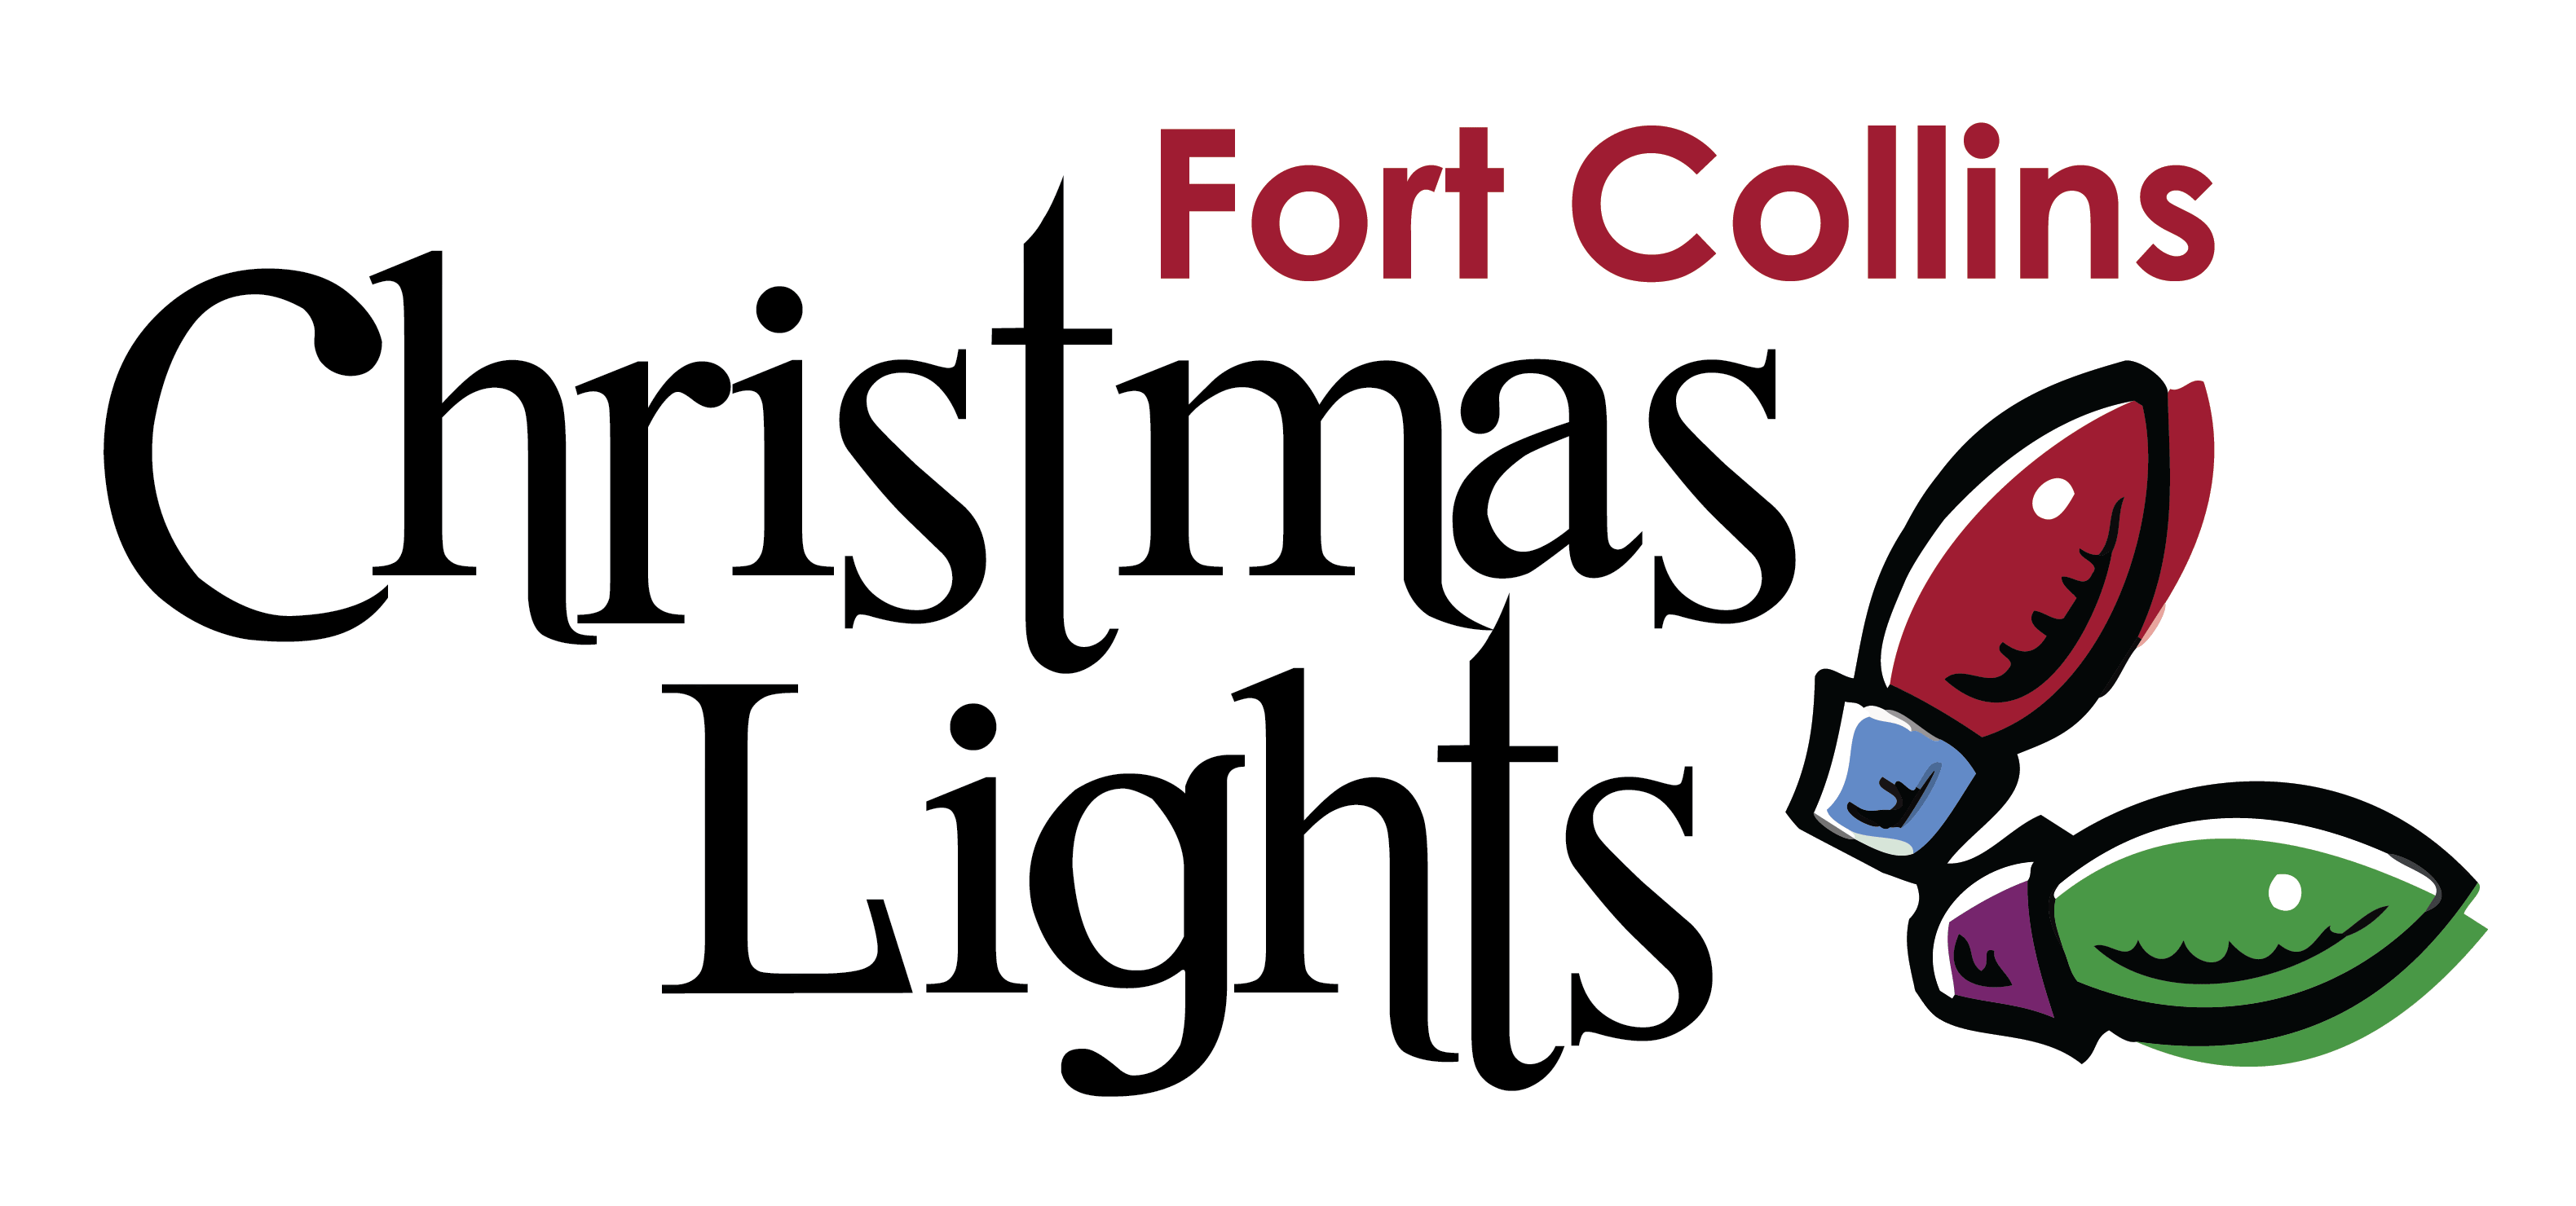 Christmas Lights Logo - Fort Collins Christmas Lights. Christmas Light Experts. Installing